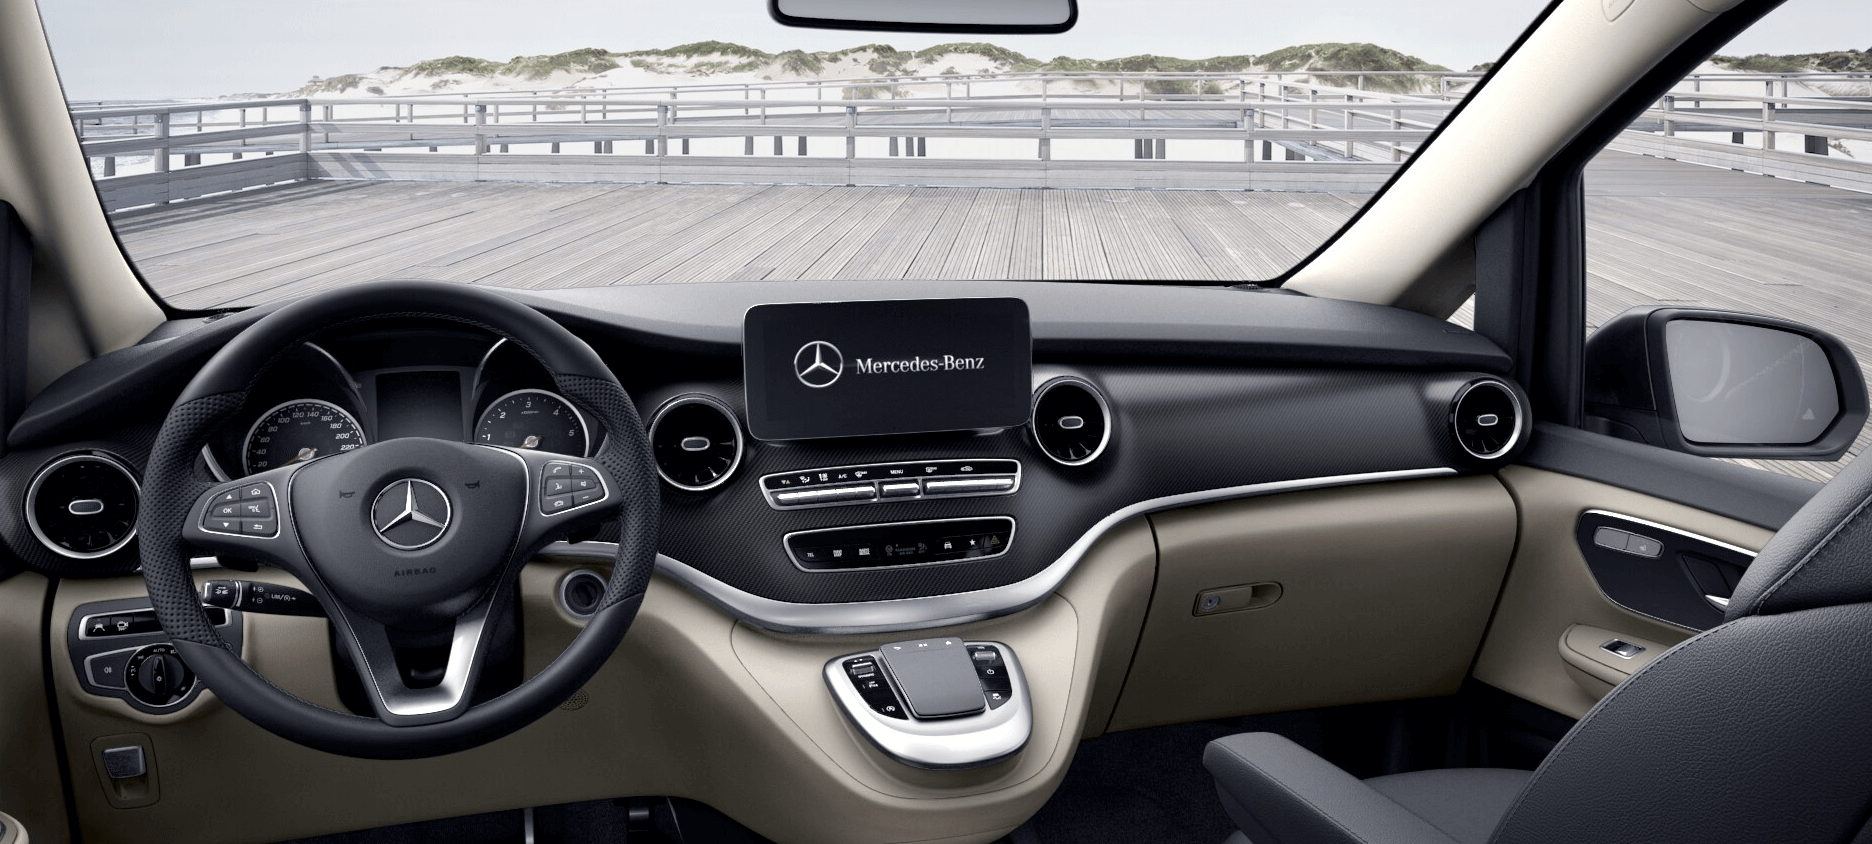 Anfahrhilfe / Bergeboards für den Mercedes-Benz Marco Polo im